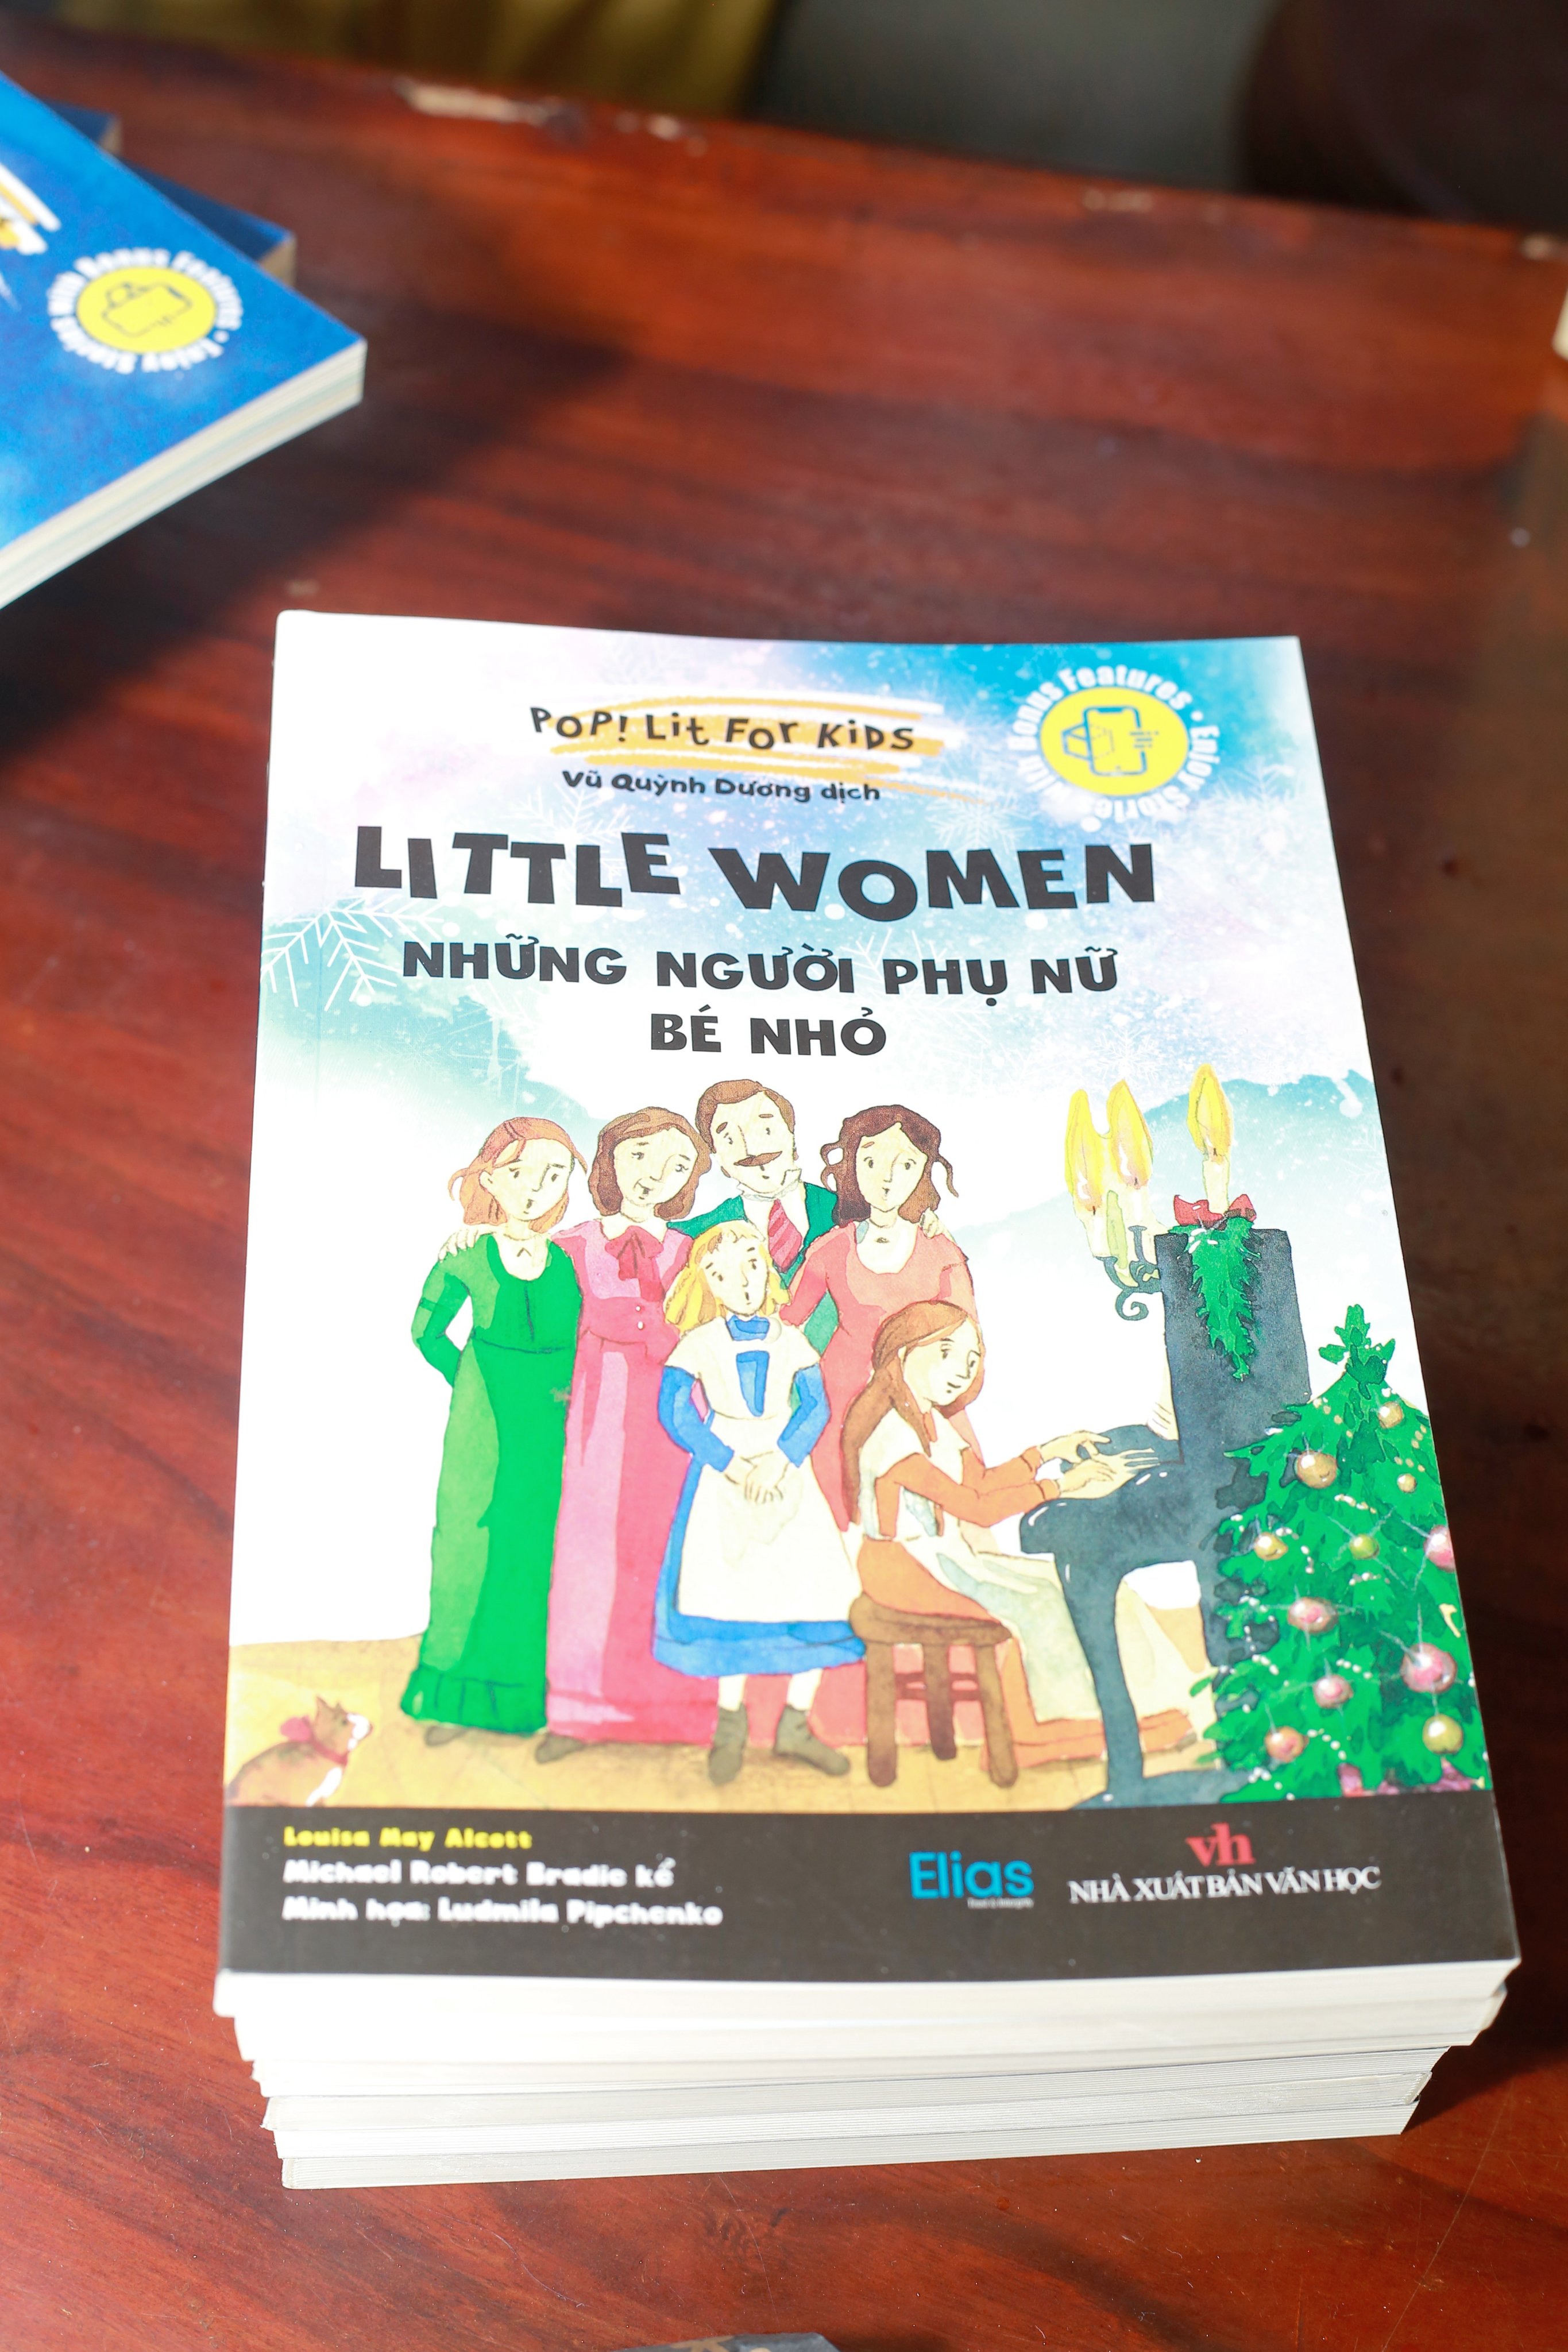 Little Women - Những Người Phụ Nữ Bé Nhỏ (Song ngữ Anh - Việt) - Tặng kèm Postcard